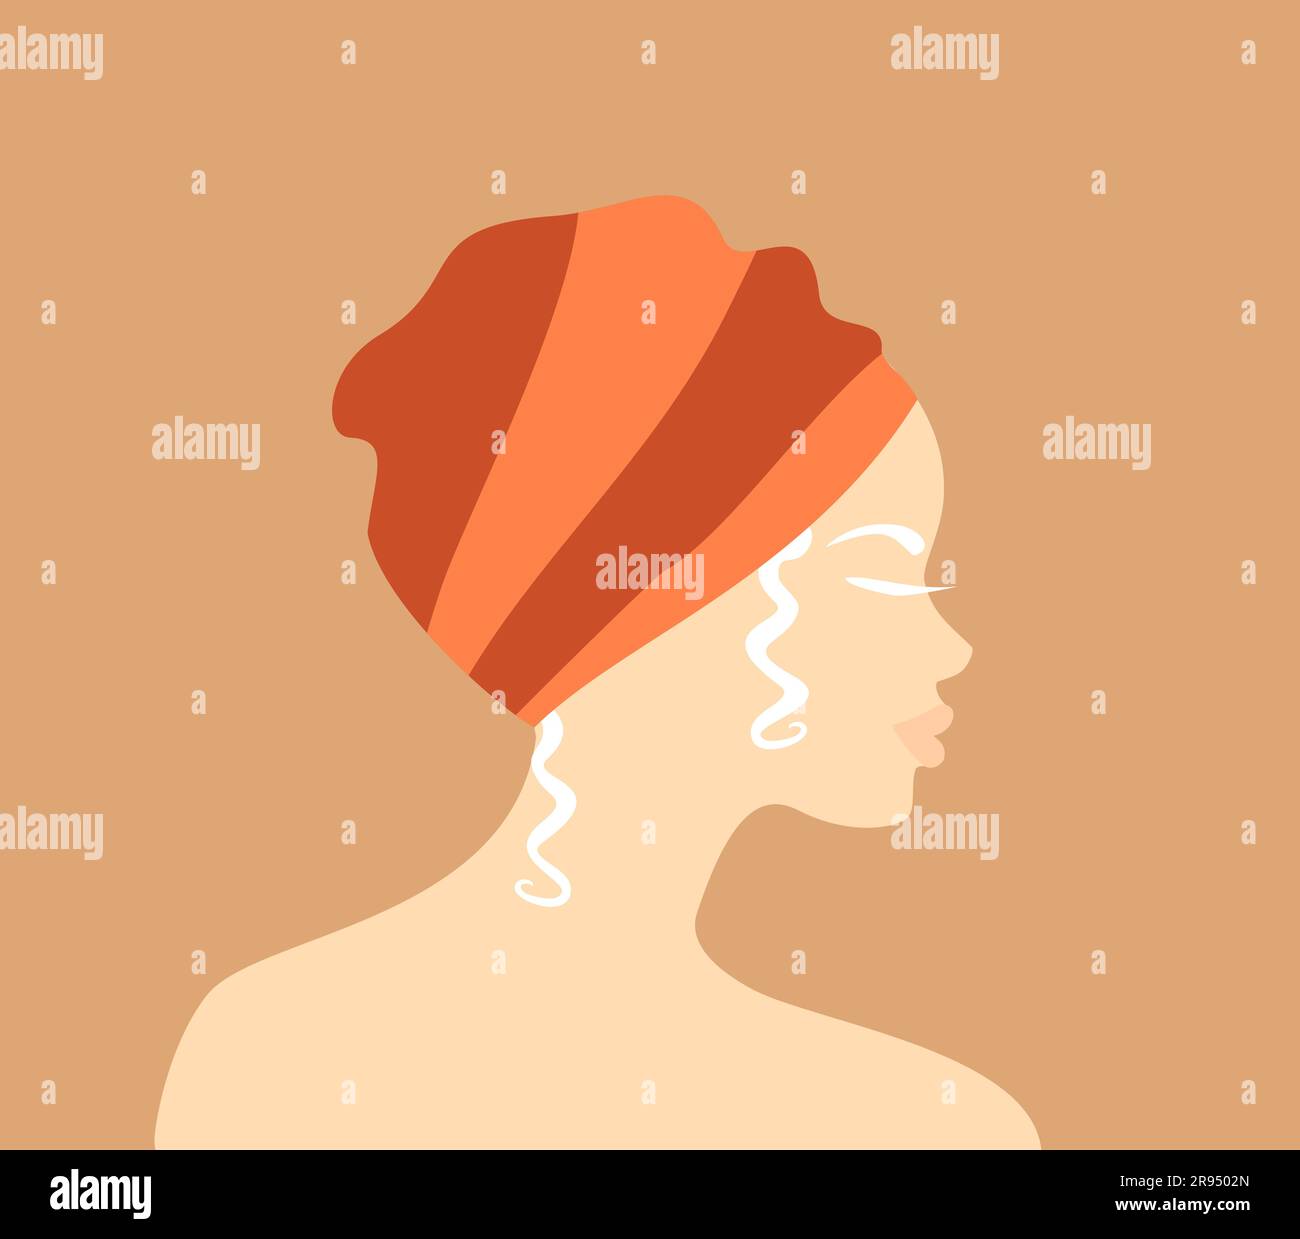 Profil einer wunderschönen afrikanischen Albino-Frau in einem traditionellen orangefarbenen Turban auf einem weichen orangefarbenen Hintergrund. Abbildung eines flachen Vektors Stock Vektor